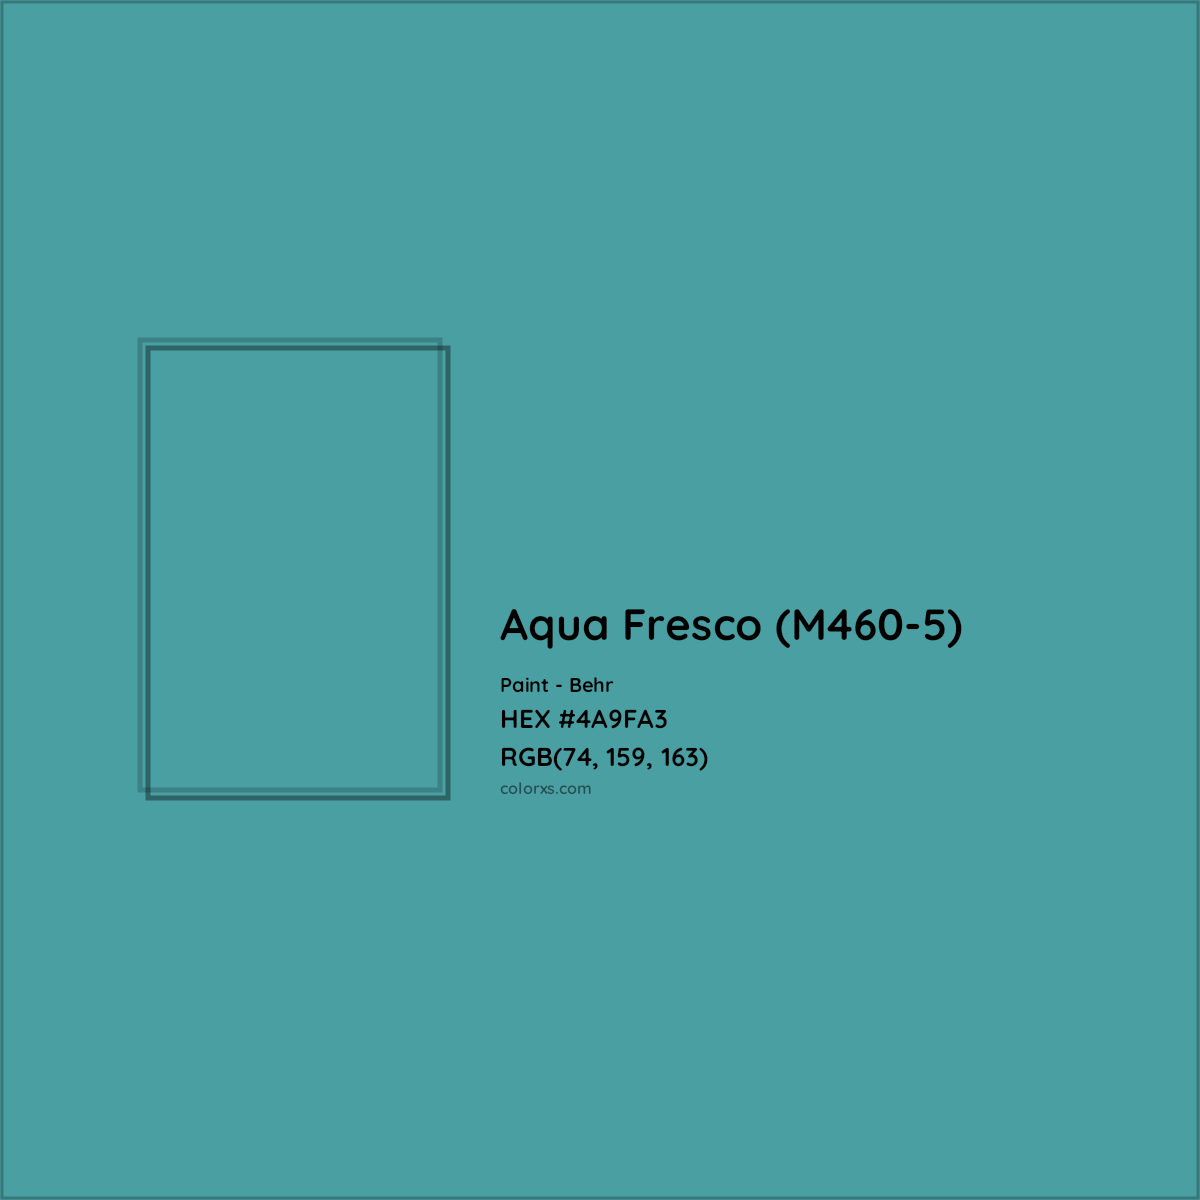 HEX #4A9FA3 Aqua Fresco (M460-5) Paint Behr - Color Code